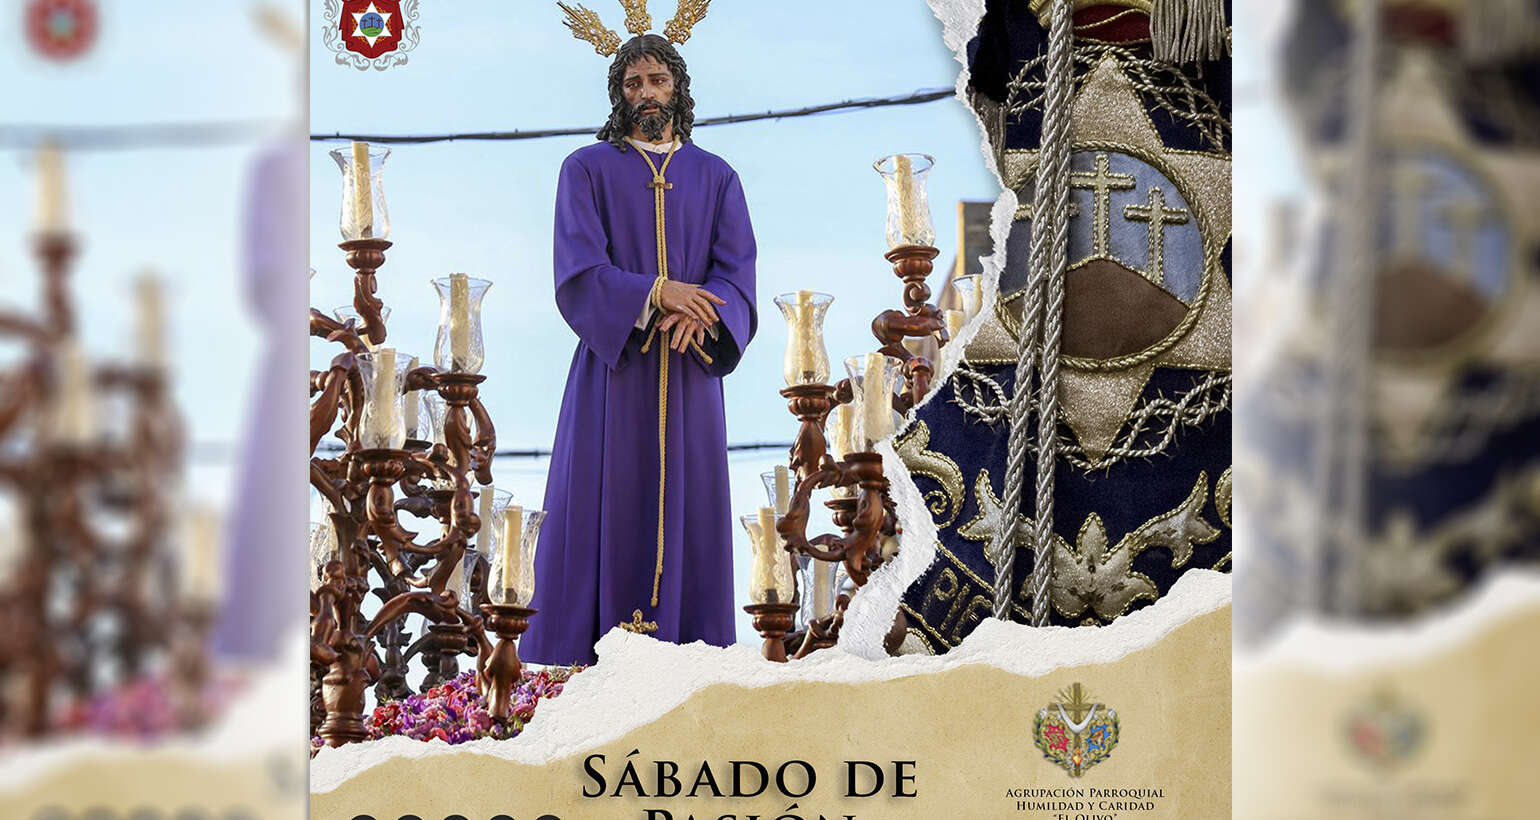 Nuestro próximo Sábado de Pasión será de Humildad y Caridad en San José de la Rinconada (Sevilla)